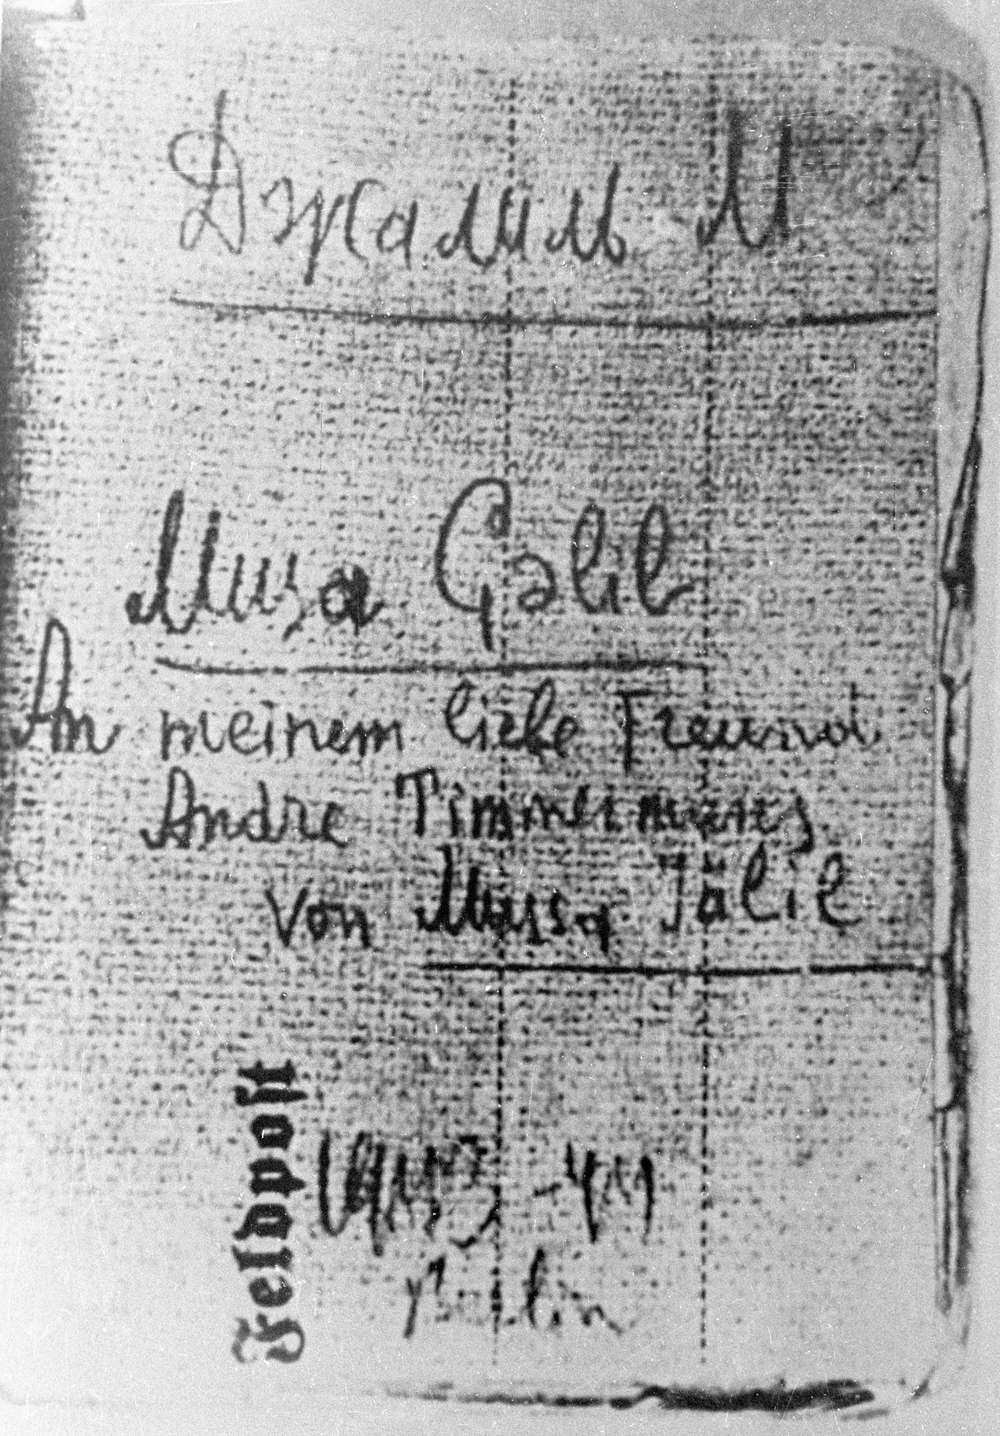 Репродукция обложки «Второй Маобитской тетради» поэта Мусы Джалиля, переданной в советское посольство бельгийцем Андре Тиммермансом.